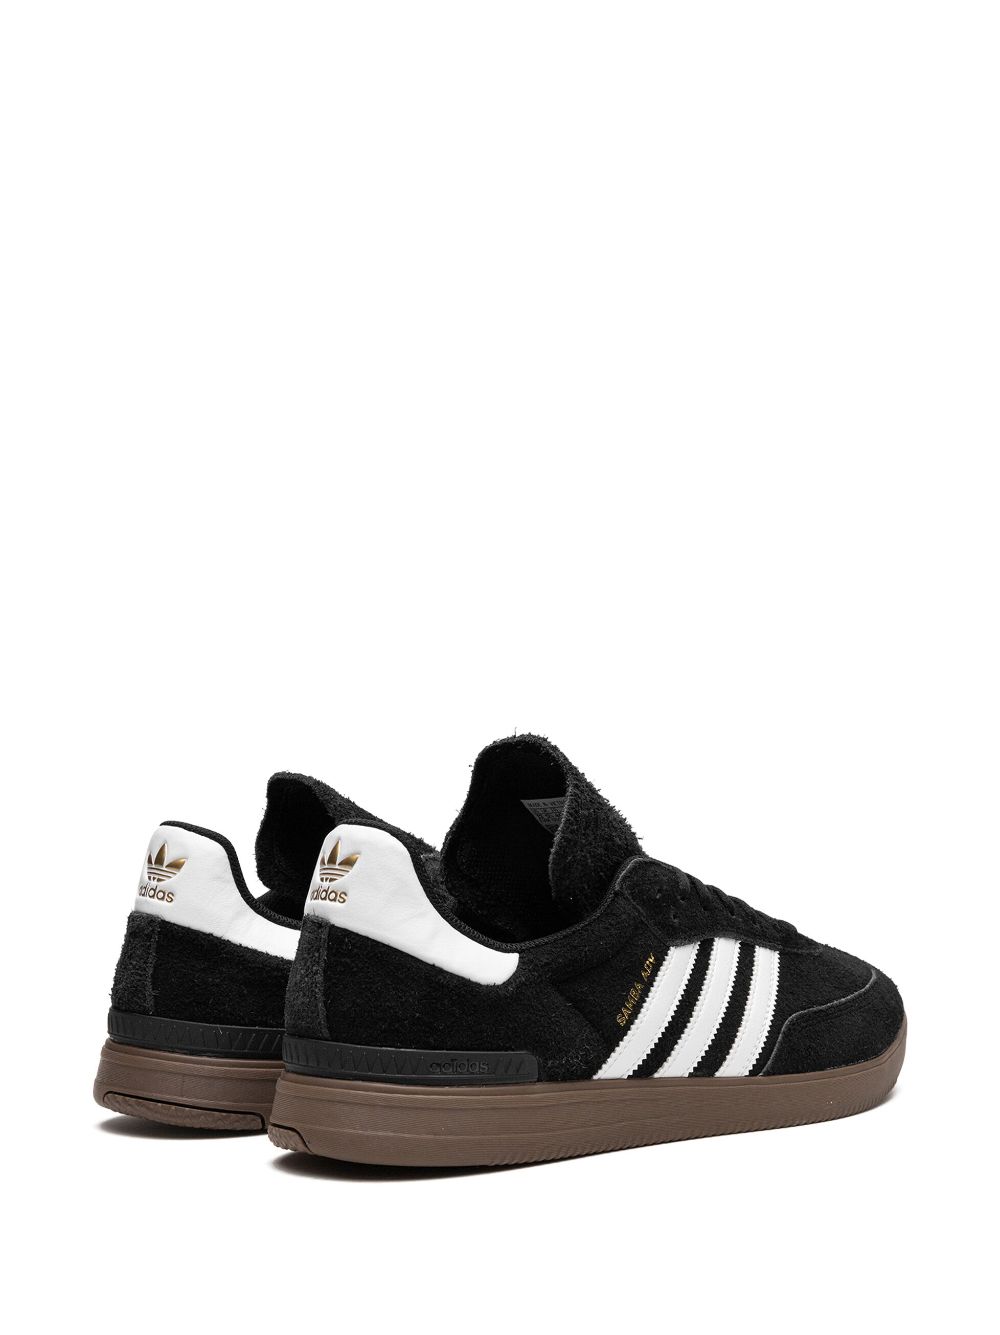 Shop Adidas Originals Samba Adv "black" Suede Sneakers